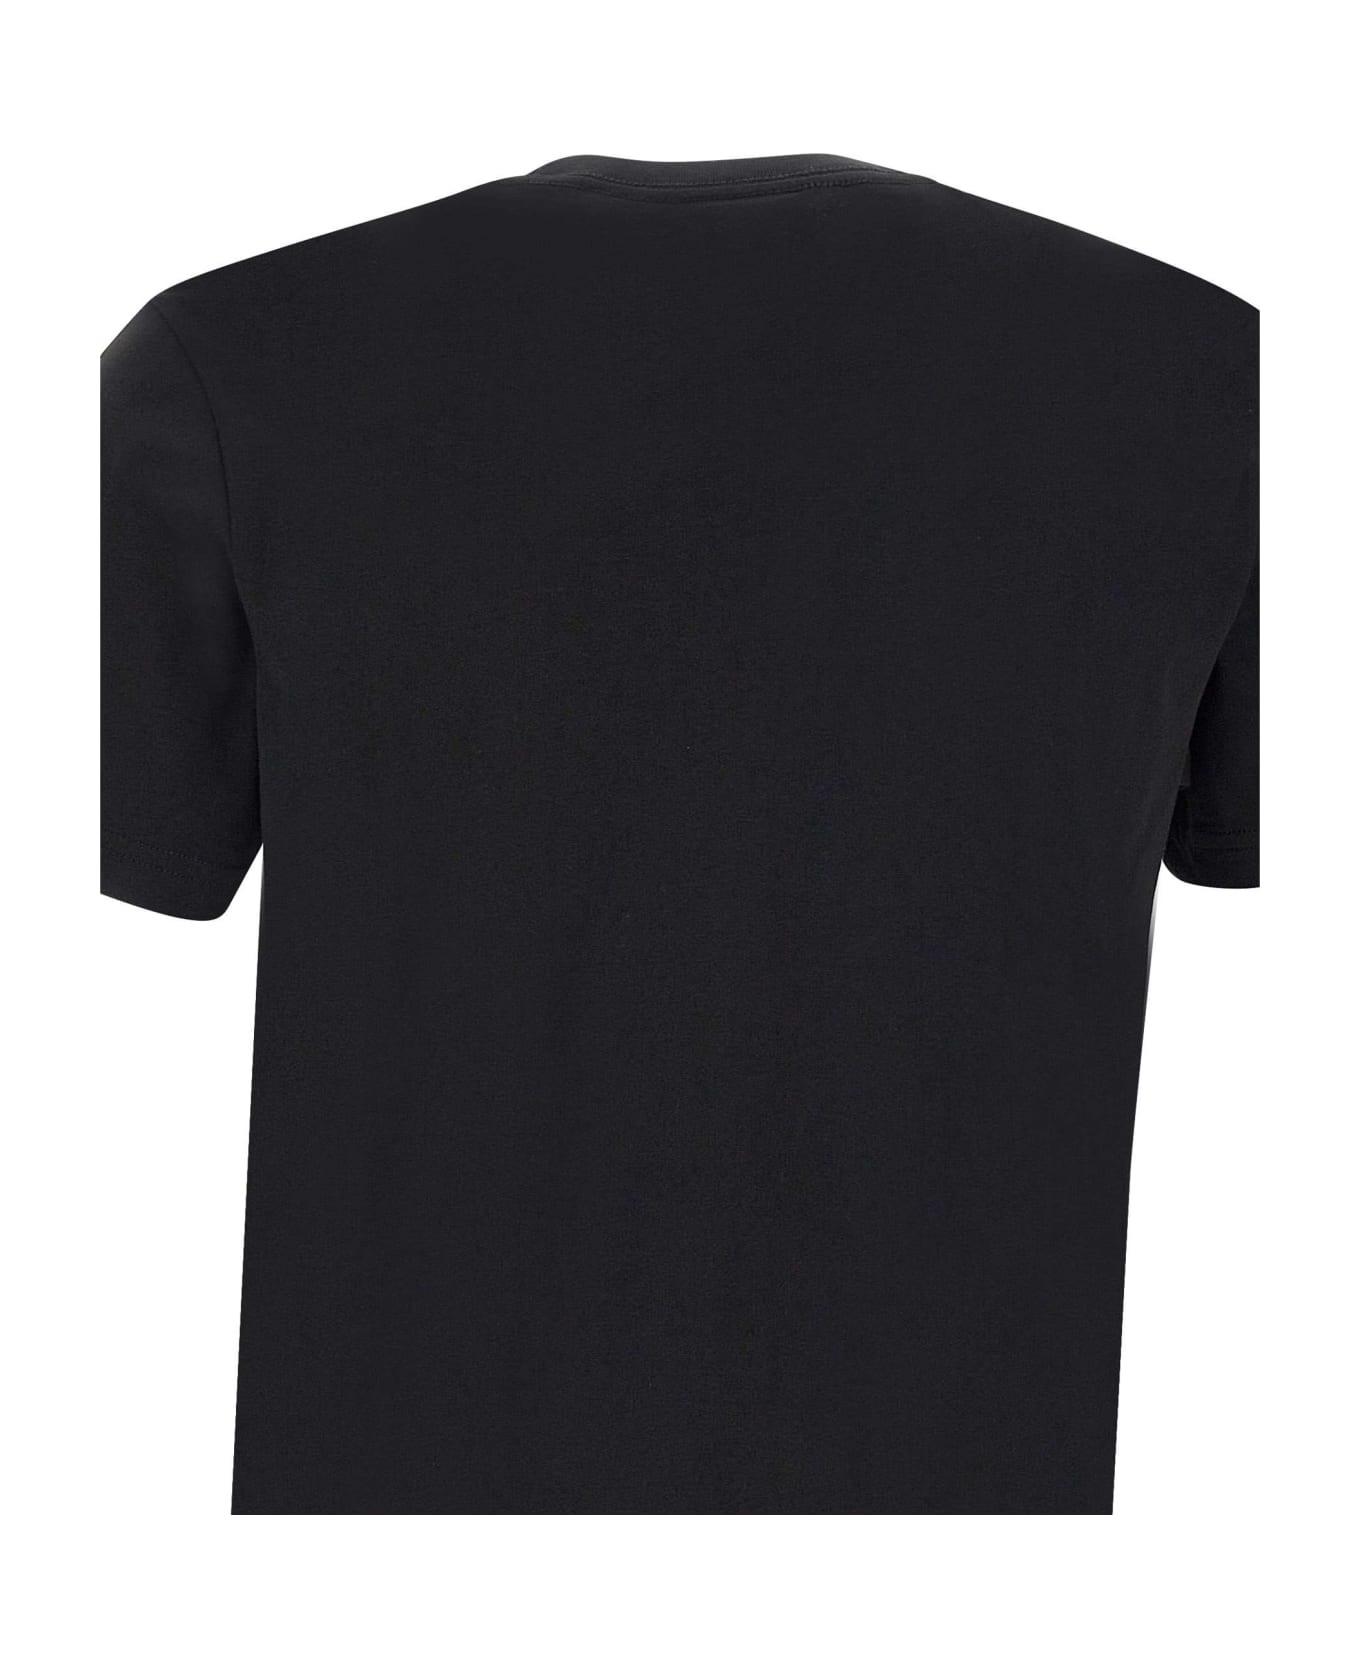 Paul Smith "opposite Skull" Organic Cotton T-shirt - BLACK